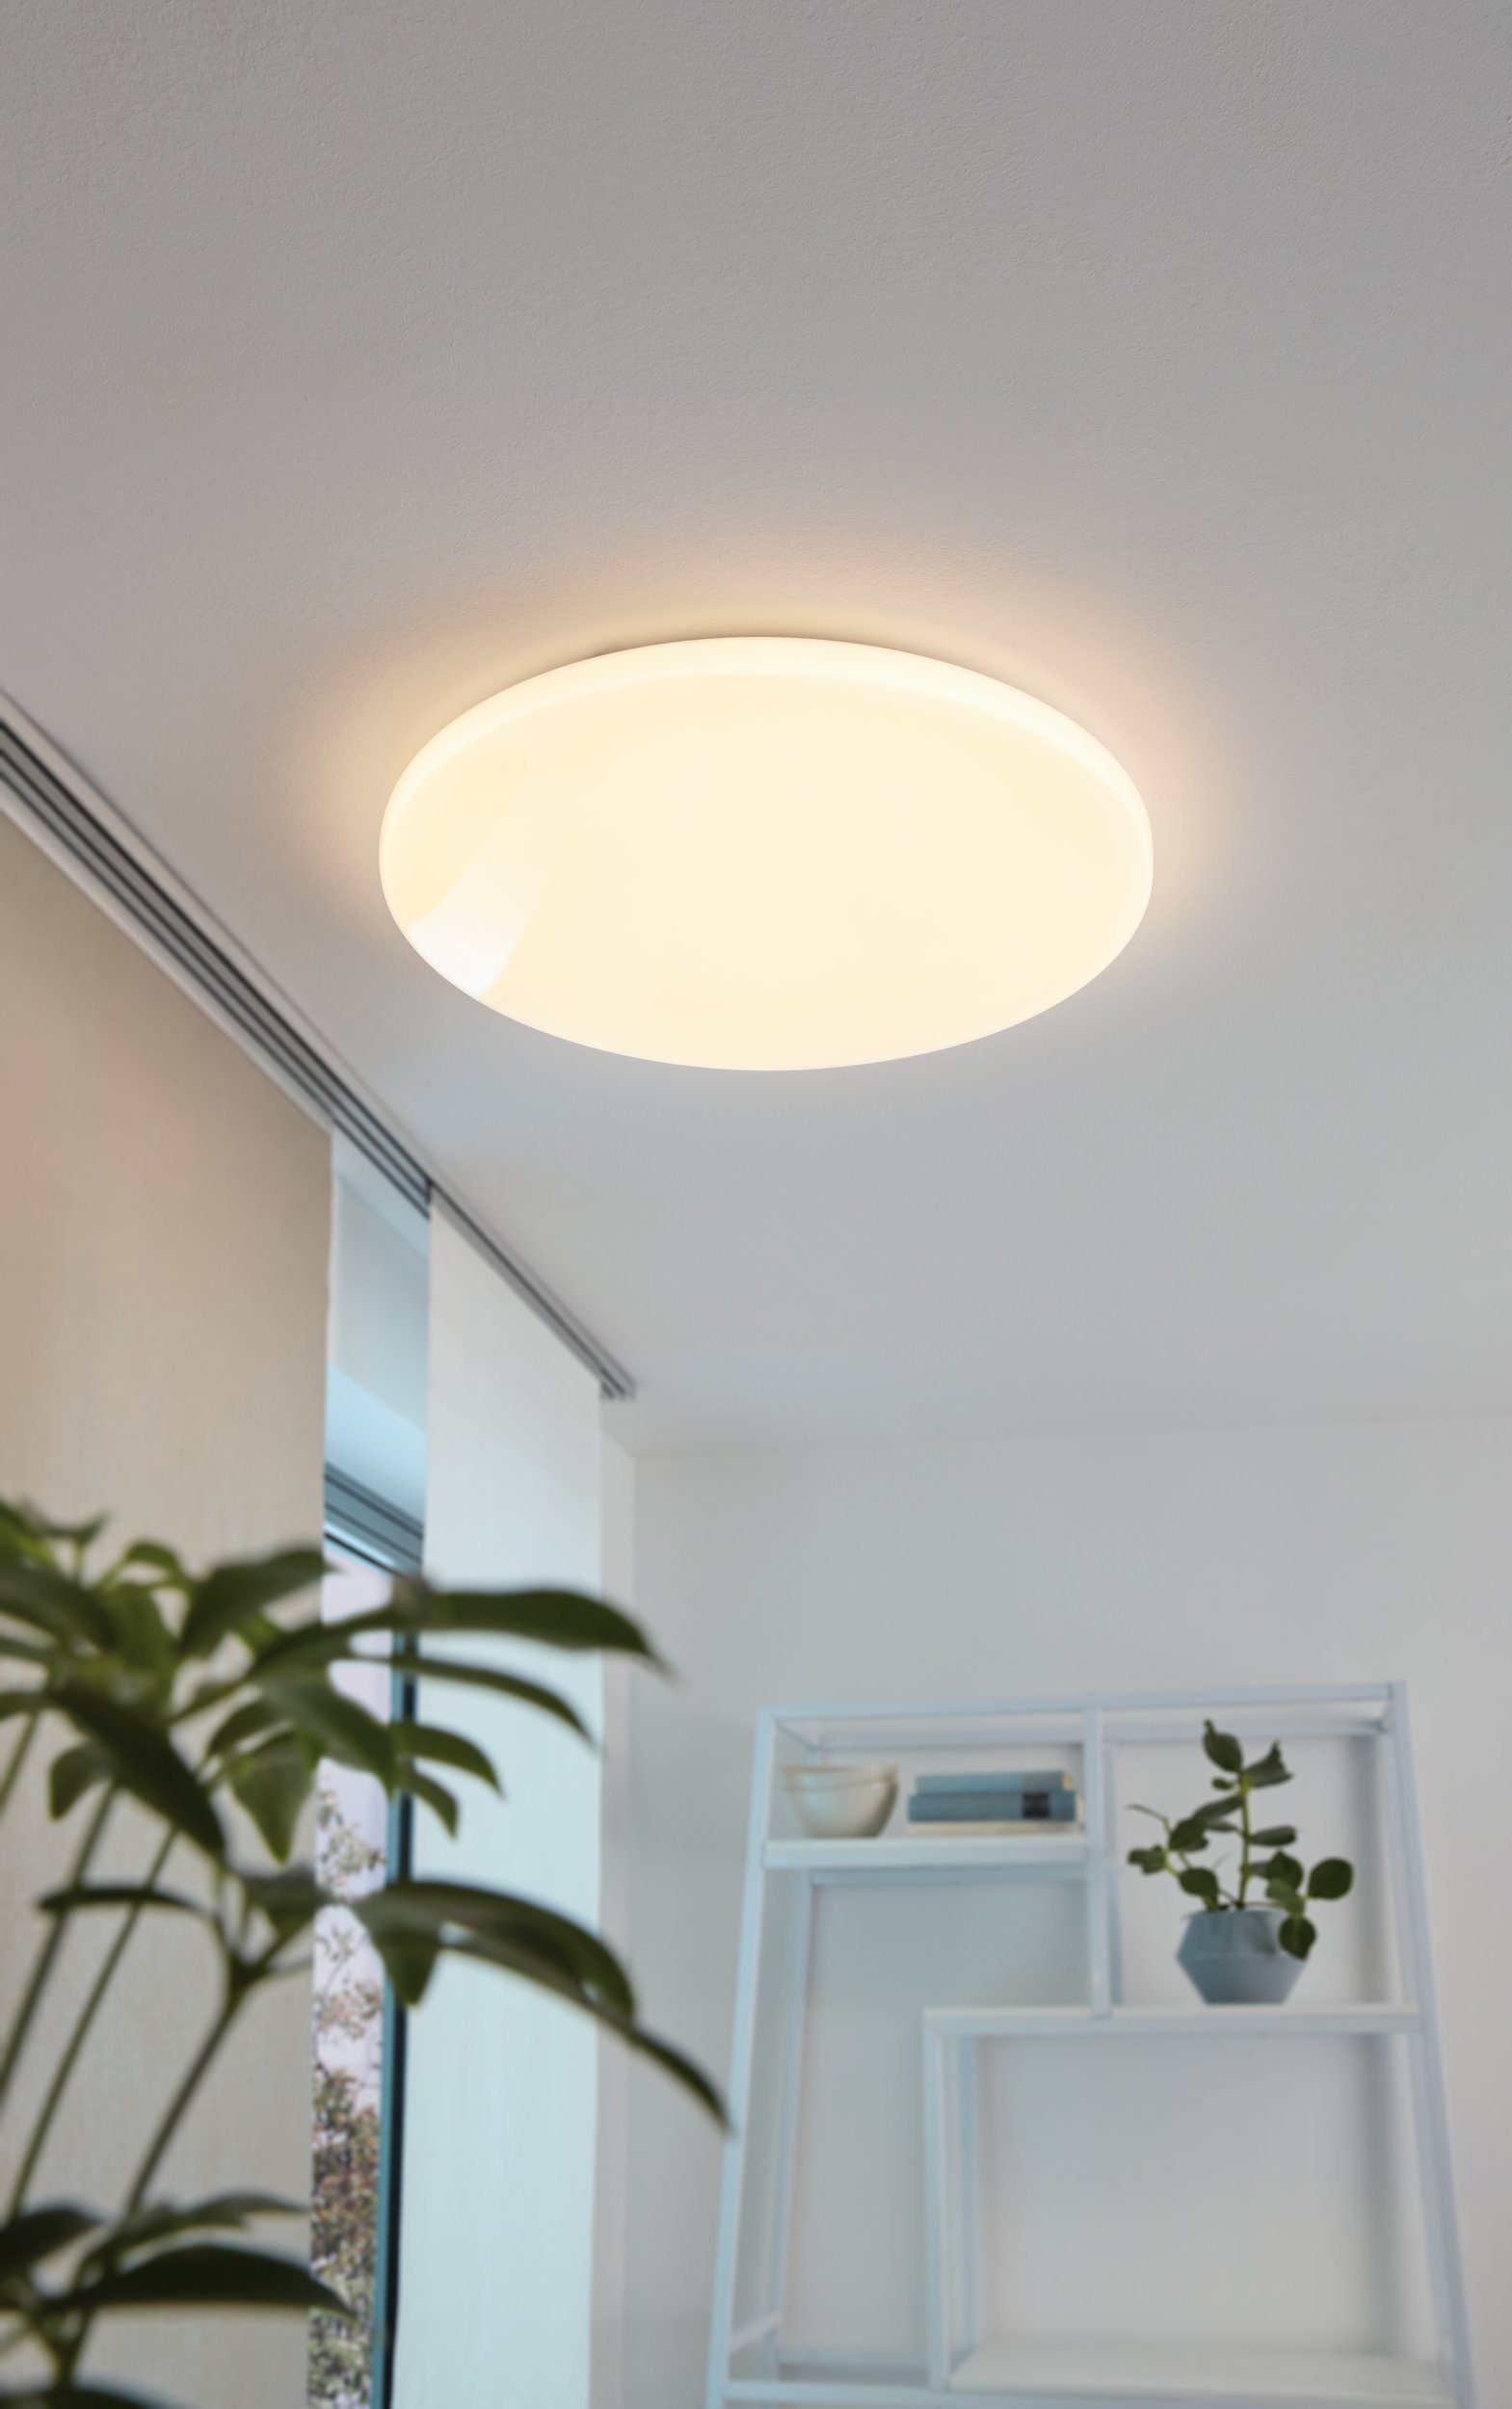 EGLO LED Deckenleuchte Pogliola, Leuchtmittel Wohnzimmerlampe, inklusive, Lampe cm, 31 Ø LED Kinderzimmerlampe Deckenleuchte